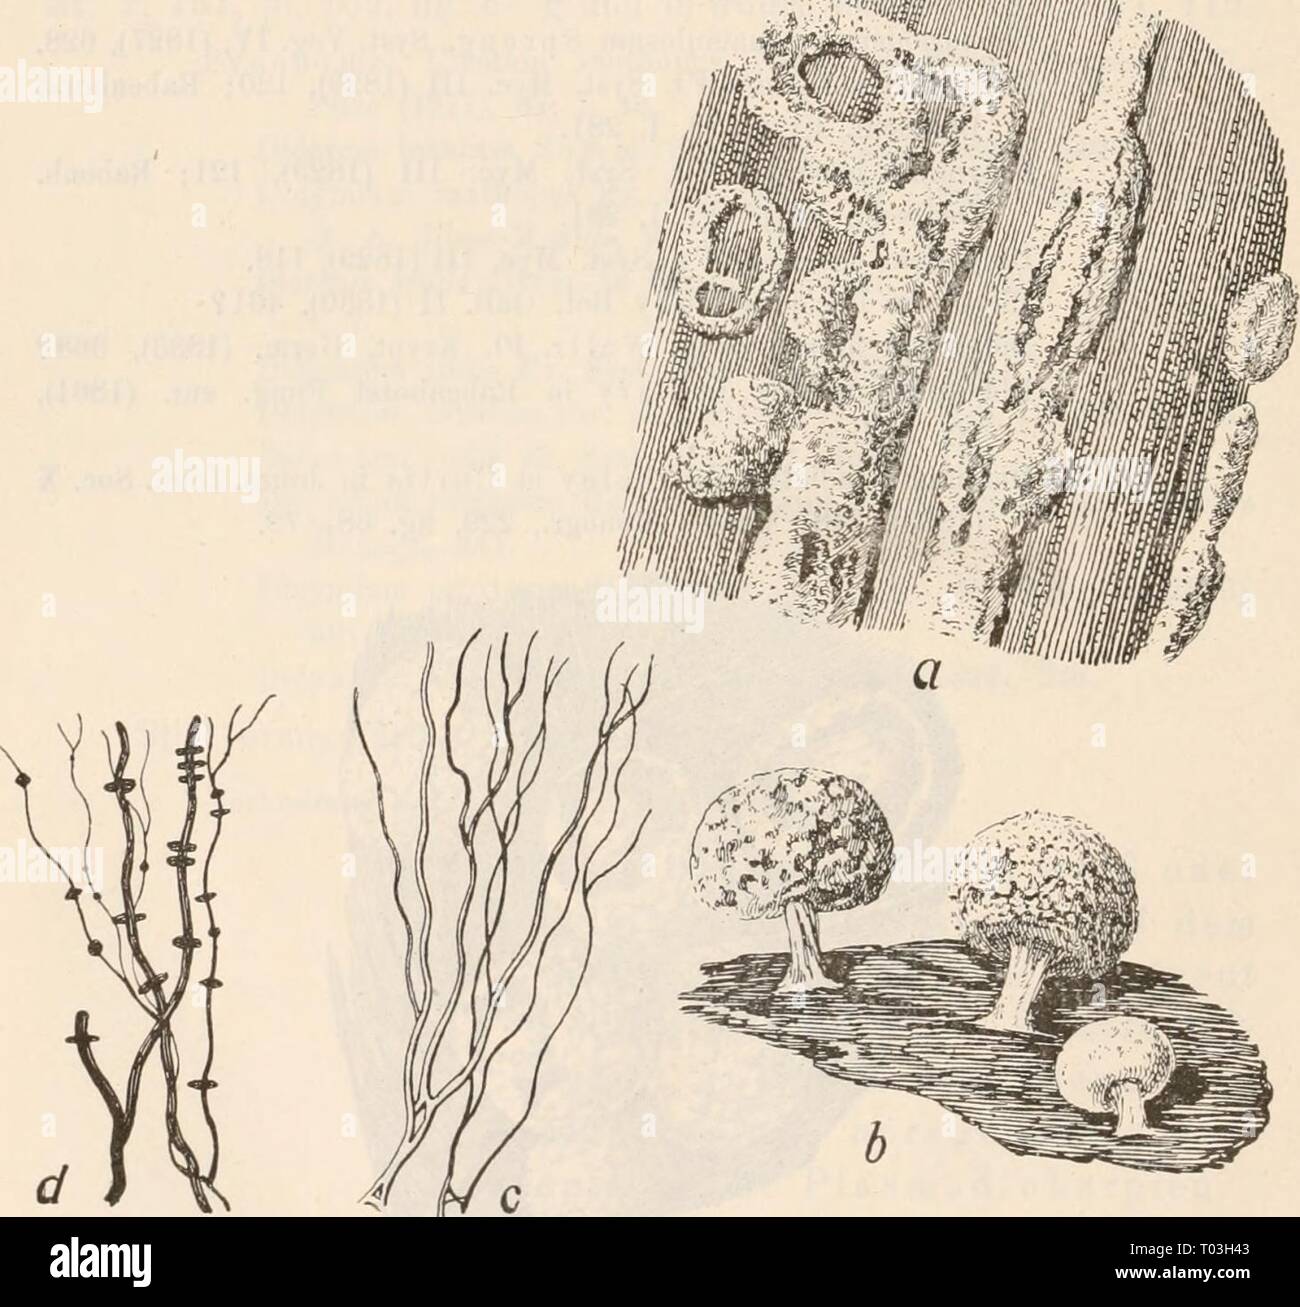 Dr. L. Rabenhorst's Kryptogamen-Flora von Deutschland, Oesterreich und der Schweiz . drlrabenhorstskr0110rabe Year: 1920  216 Didymium Choiicliiorlerma de Bary et Eost. in Alex. Stroz. (1872), 89. Didymium ueglectum Berkeley et Broome in .Joiivii. Tiiiiii. Soe. XIV (1873), 83. Didymium Fuckeliauum Eost. Monogv. (1875), 1(51, tig. 134; Massee Mouogr., 222. Didymium macrospermum Eost. Mouogr. (1875), 161; Celak. Myxom. Böhm., 62; Massee Mouogr., 228. Didymium discoideum Rost. Mouogr. (1875), 162; Massee Mouogr., 229. Didymium couflueus Rost. Mouogr. App. (1876), 22. Didymium platypus Hazsiinszky Stock Photo